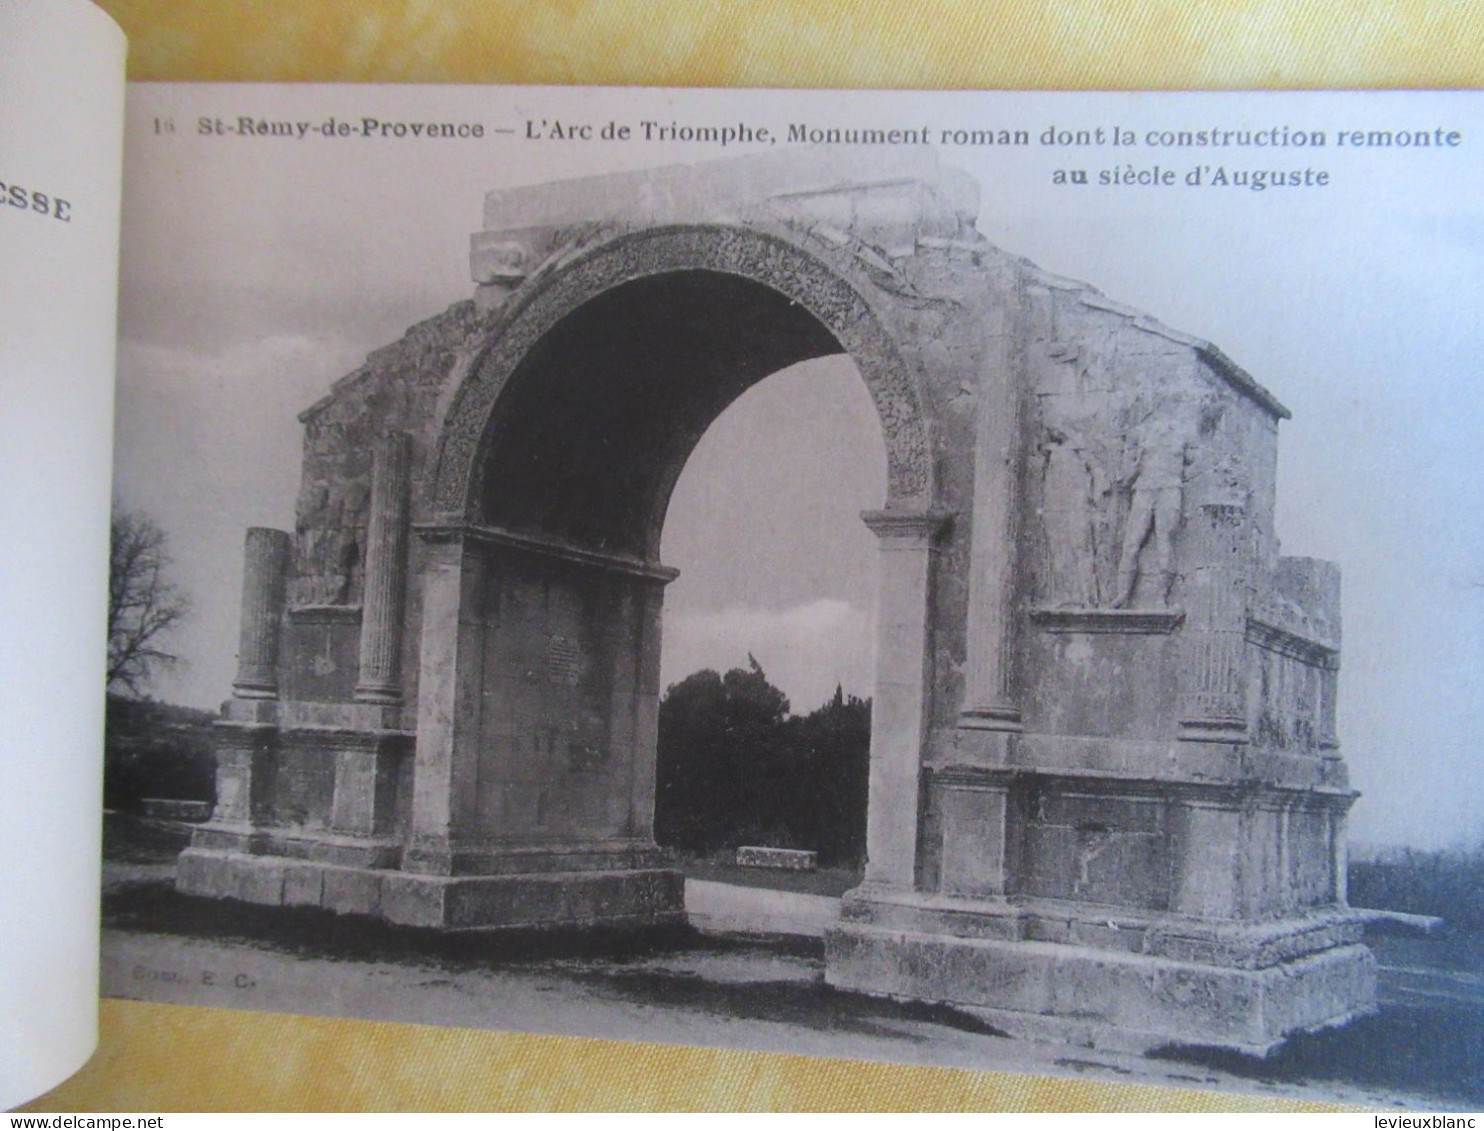 12 cartes postales détachables/" Saint Rémy de Provence"/ Coll EC / Vers 1920-1940               CPDIV394